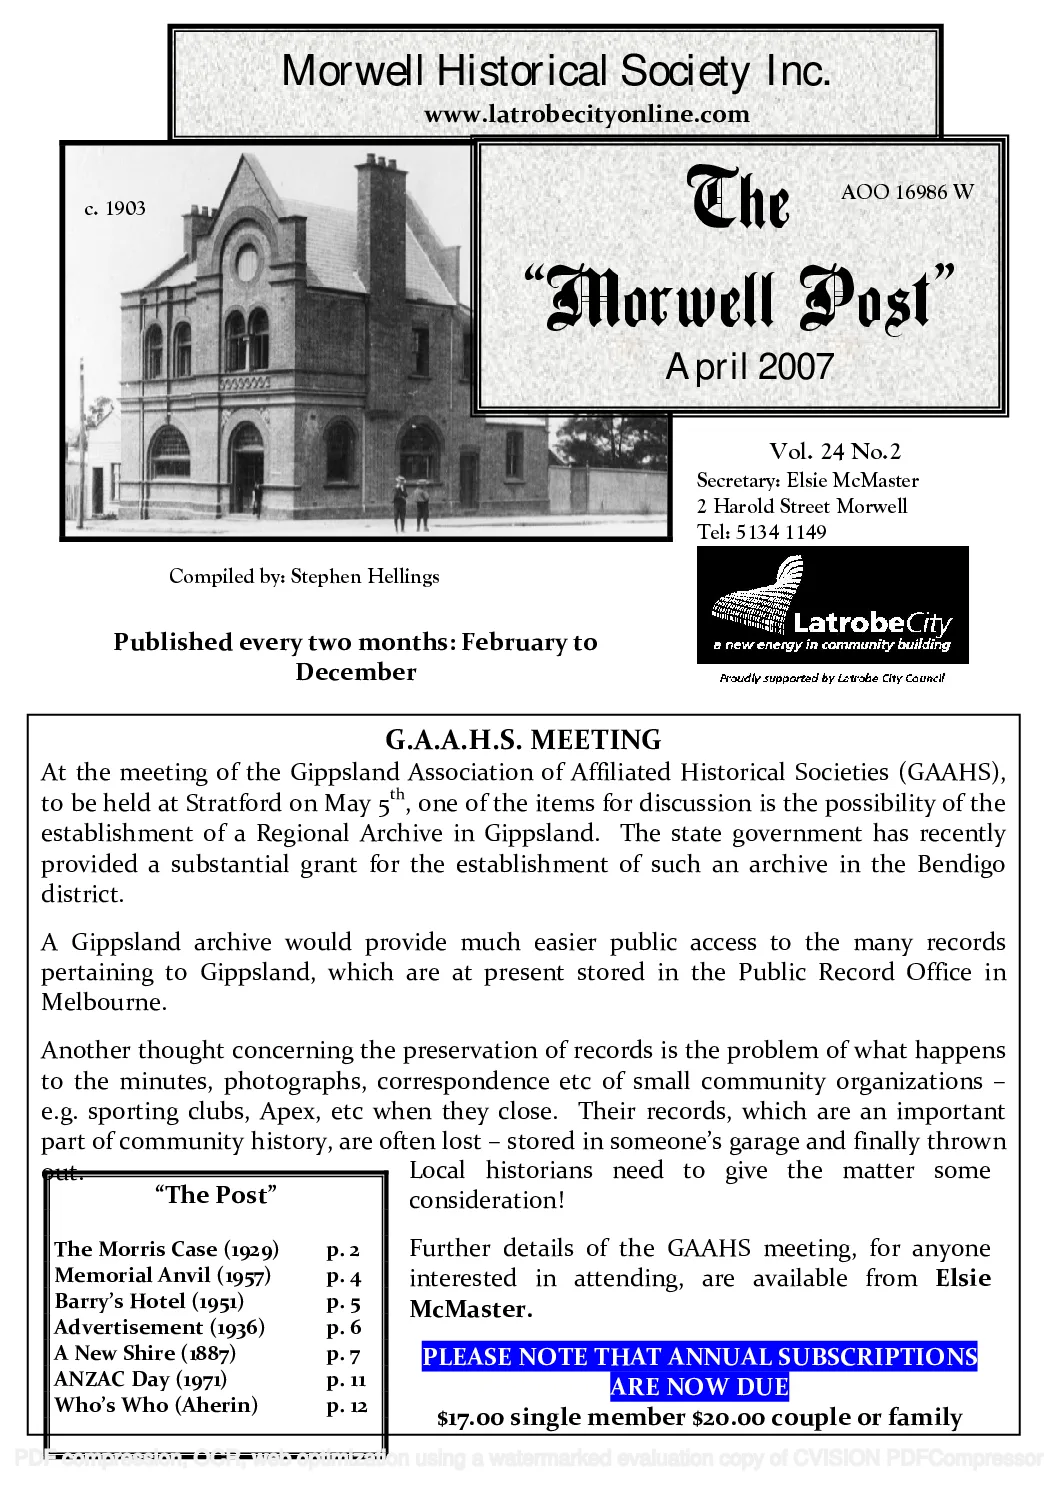 Newsletter April 2007